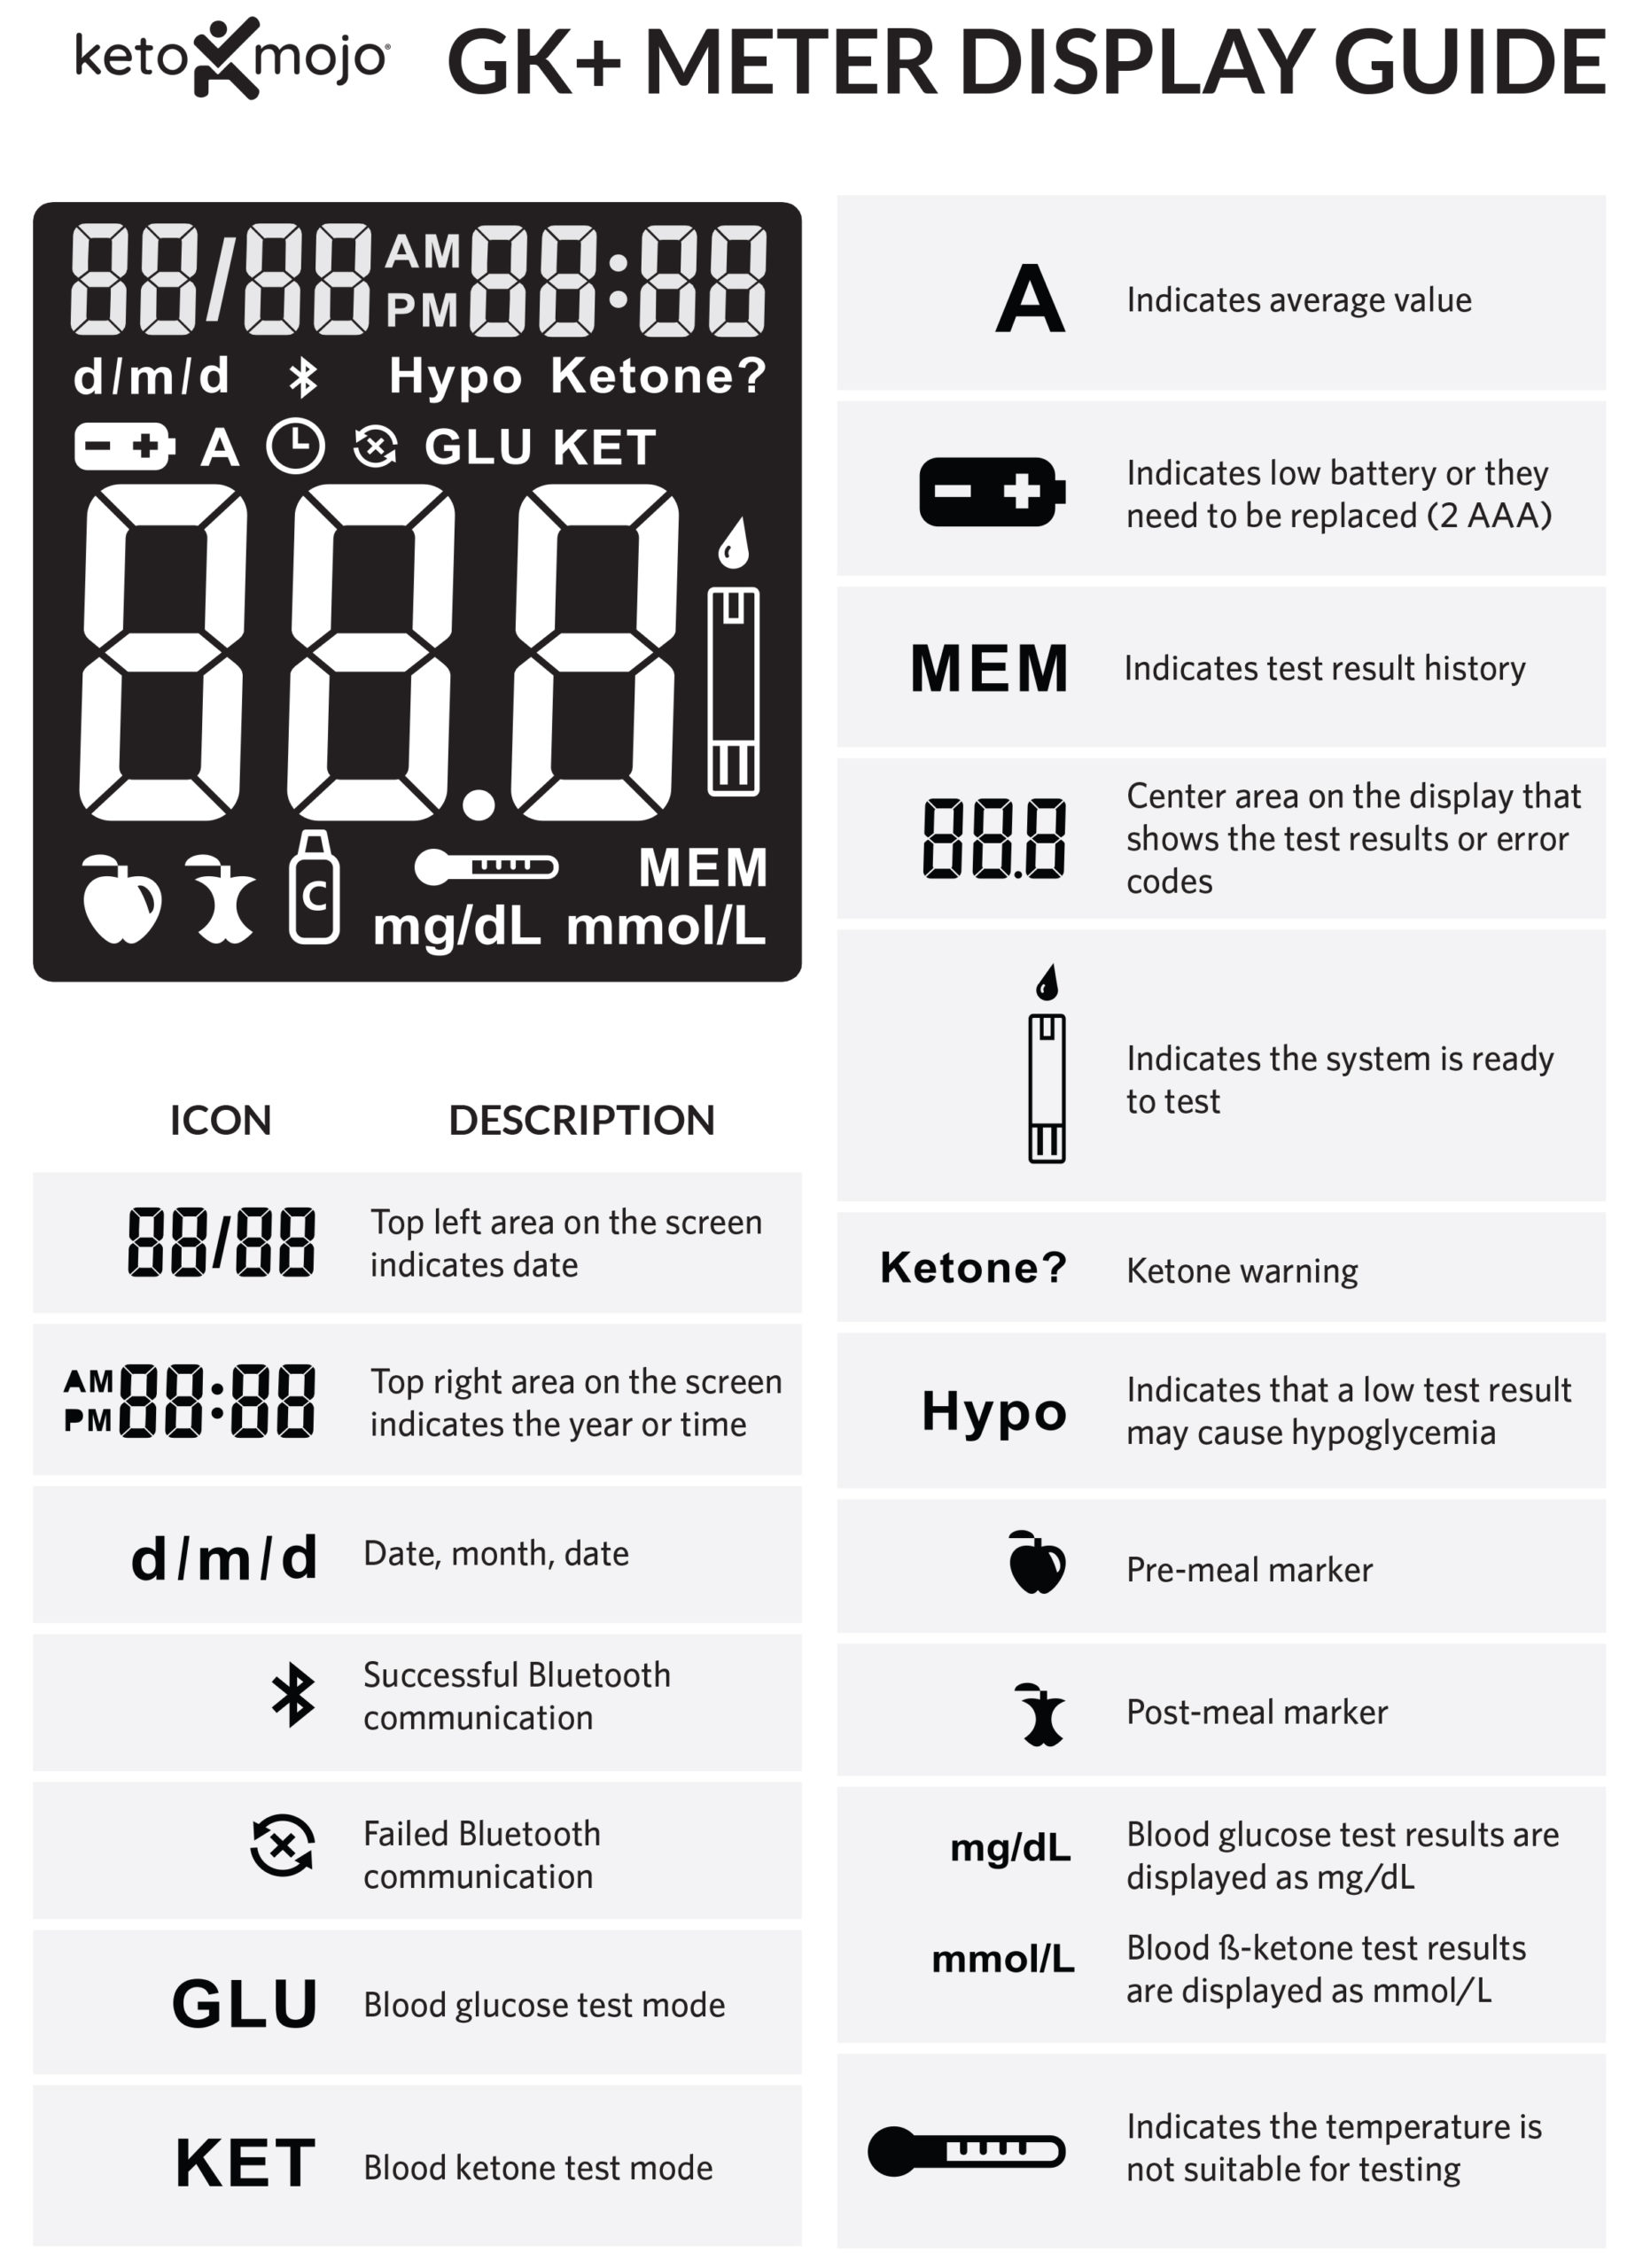 Guide explaining symbols on Keto-Mojo GK+ Meter Screen